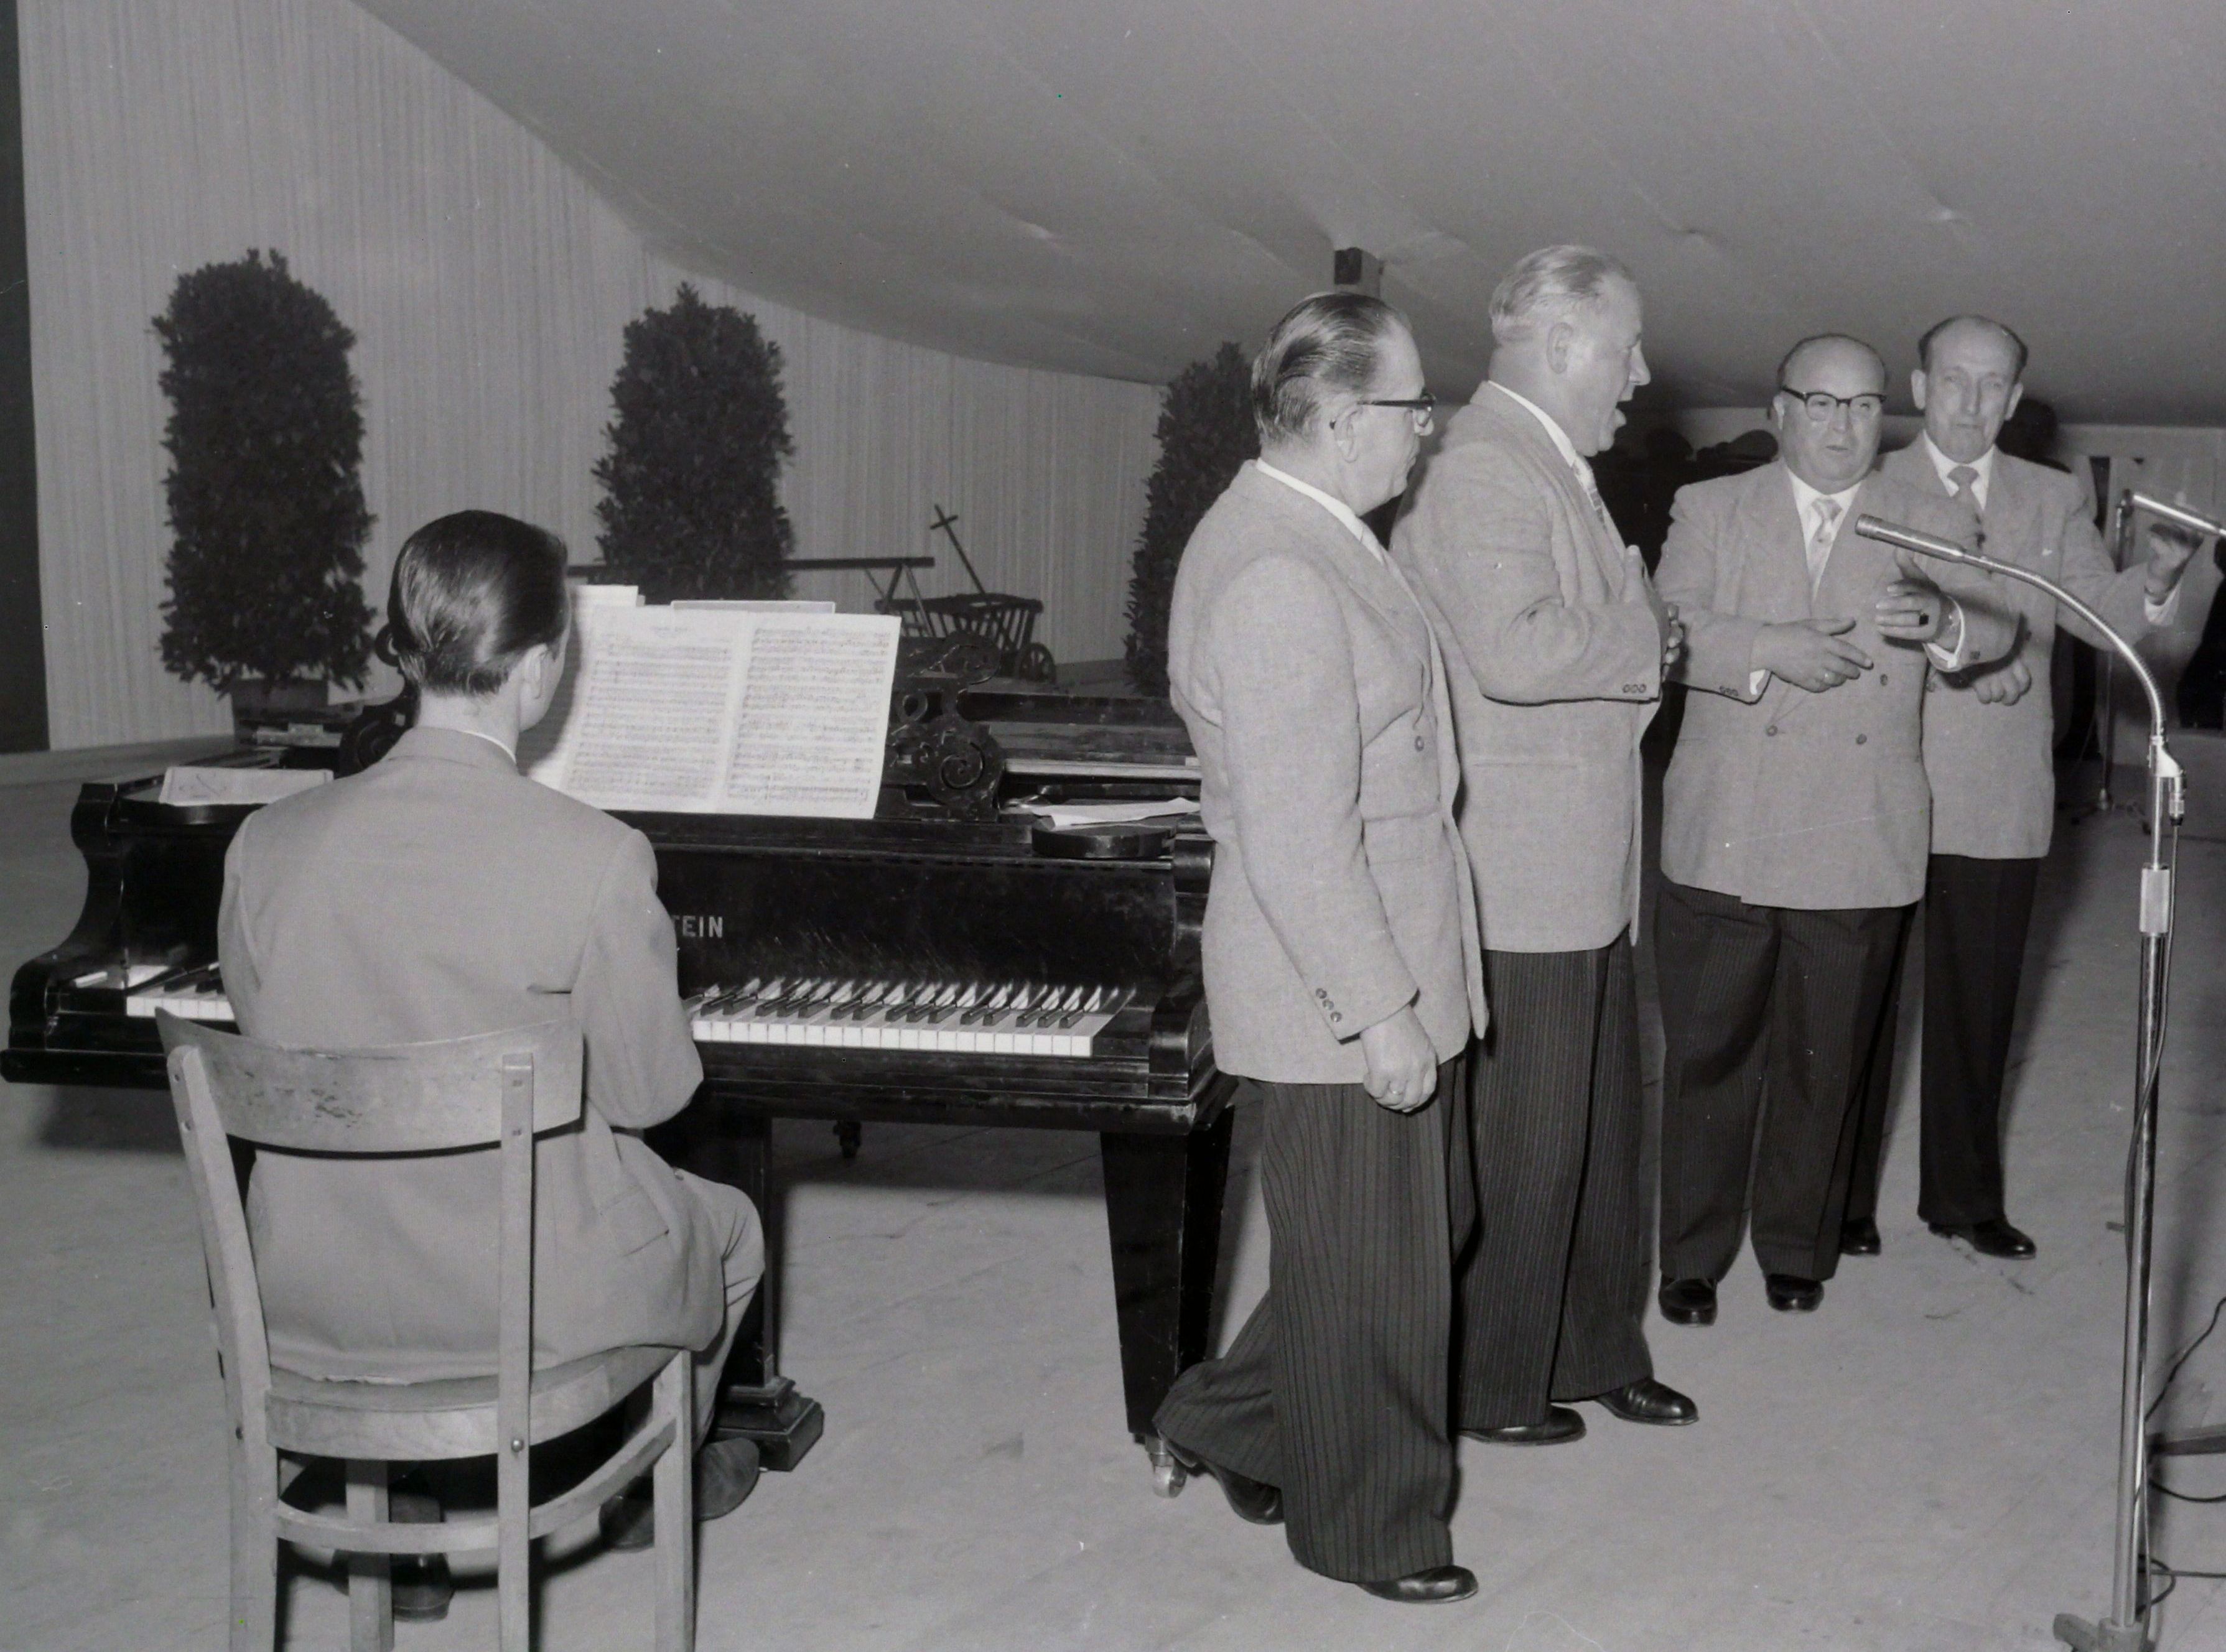 vier Männer singen auf der Bühne, sie werden begleitet von einem Mann am Klavier
